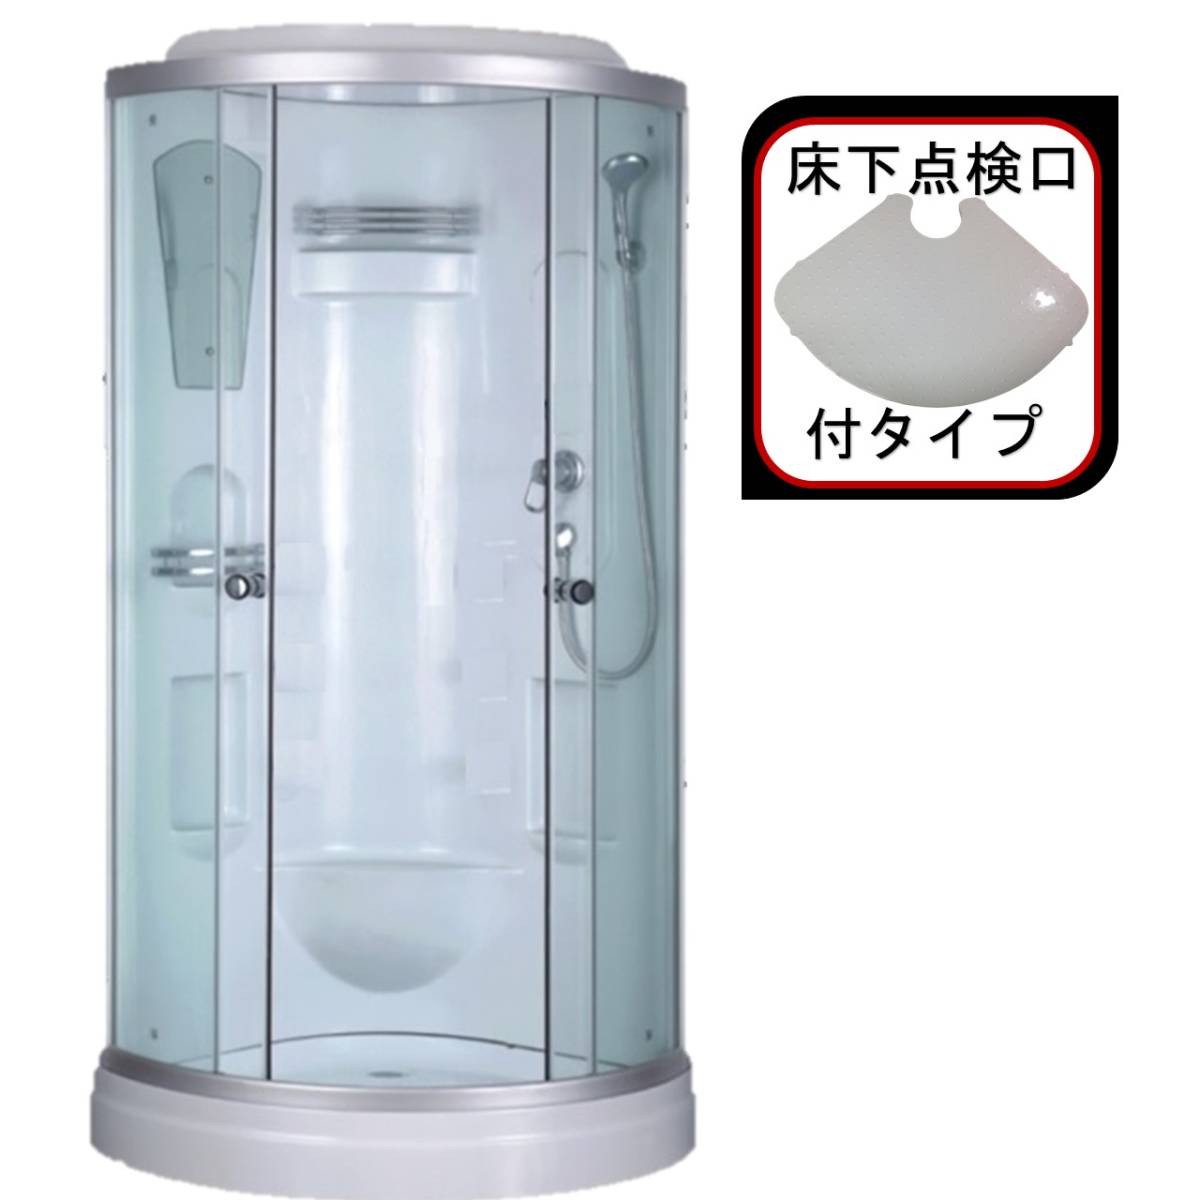 (組立込)シャワーユニットSS-007R-K（赤）W820×D820×H2190  実用性と機能美を備えたシンプルシャワー